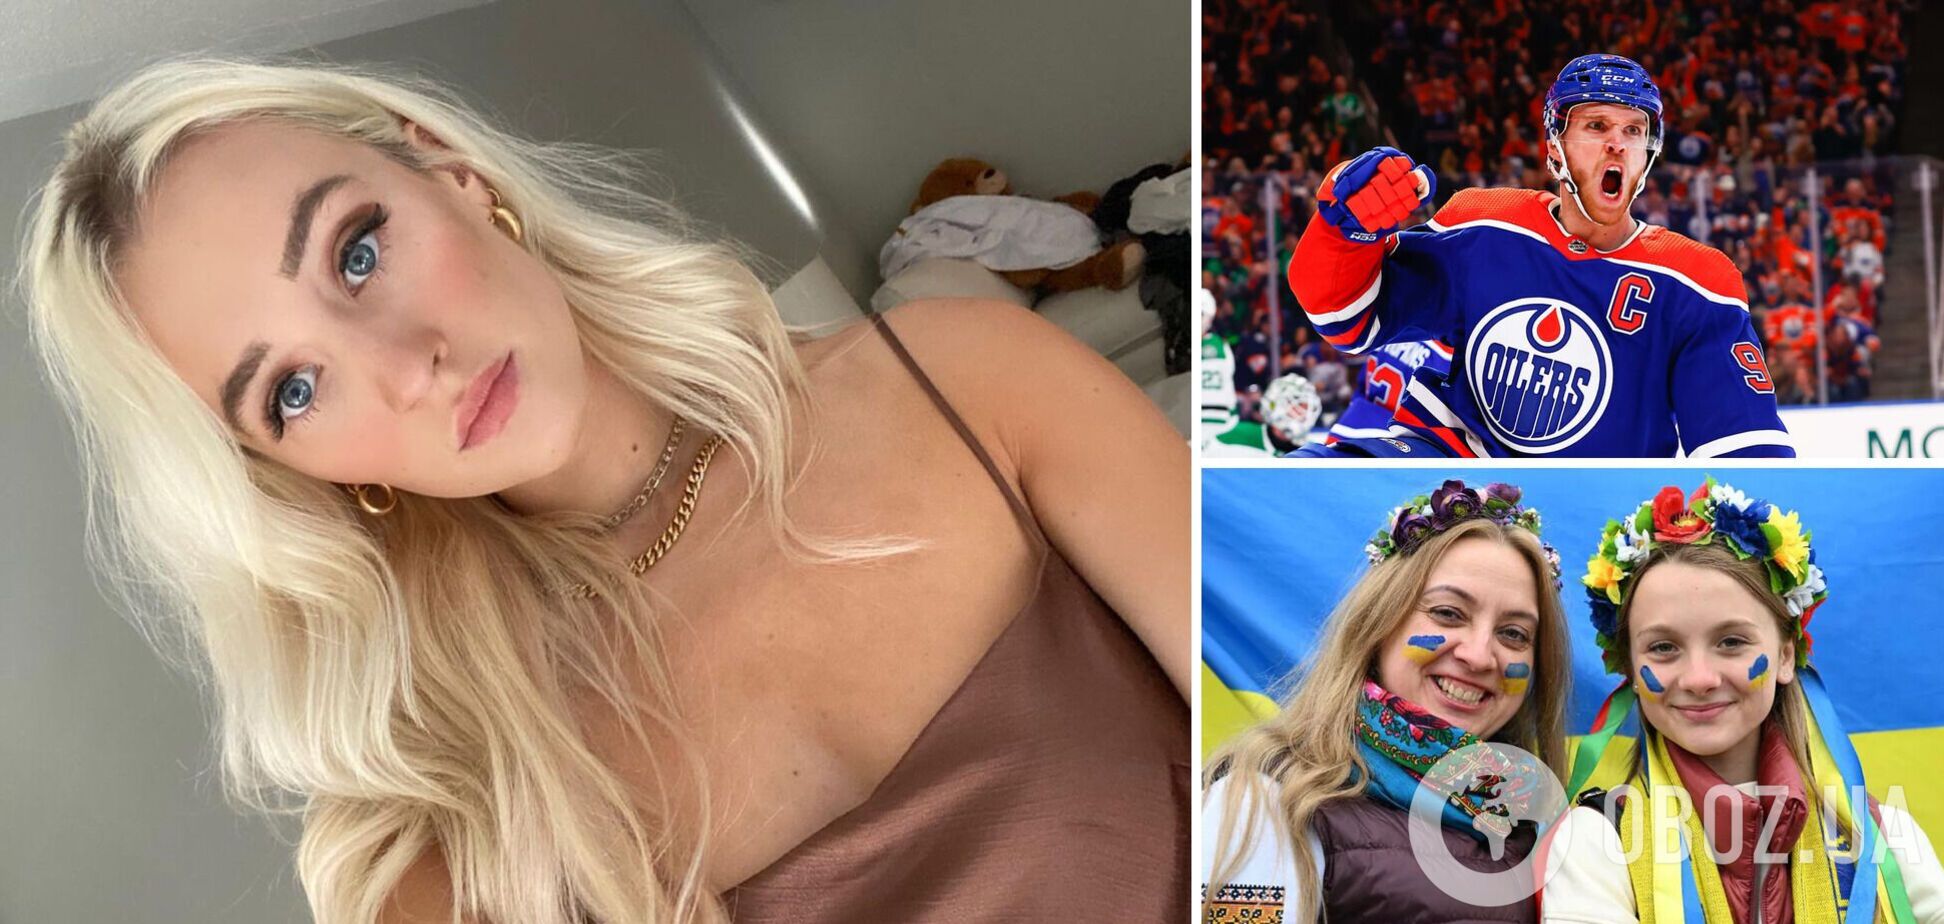 'У меня украинская семья': девушка звезды НХЛ сделала признание. Фото эффектной блондинки